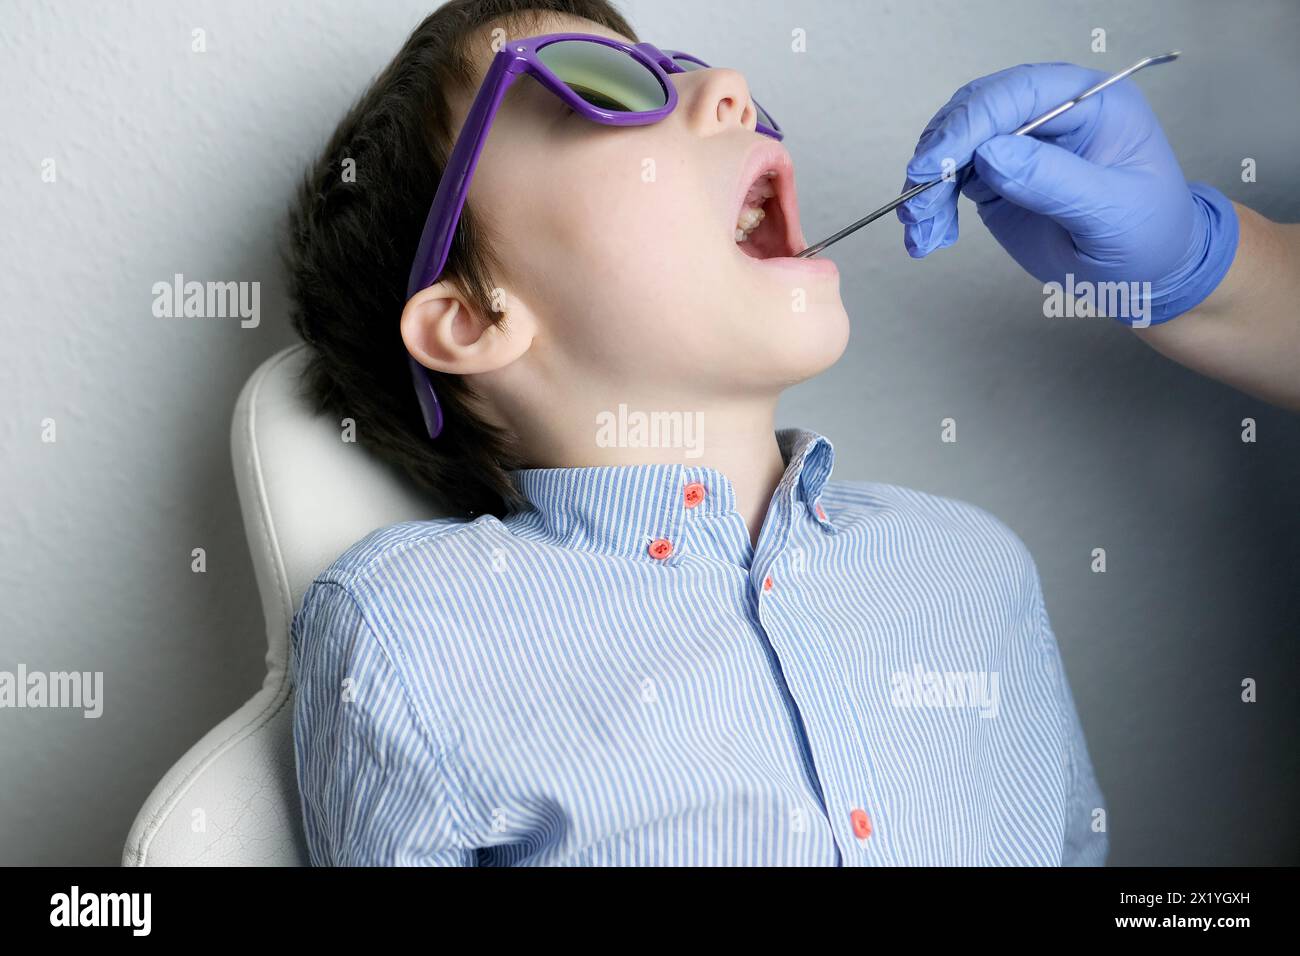 Zahnarzt, Arzt untersucht die Mundhöhle eines kleinen Patienten, Backenzähne wachsen, Junge, Kind mit offenem Mund, Nahaufnahme der Zähne des Kindes Stockfoto